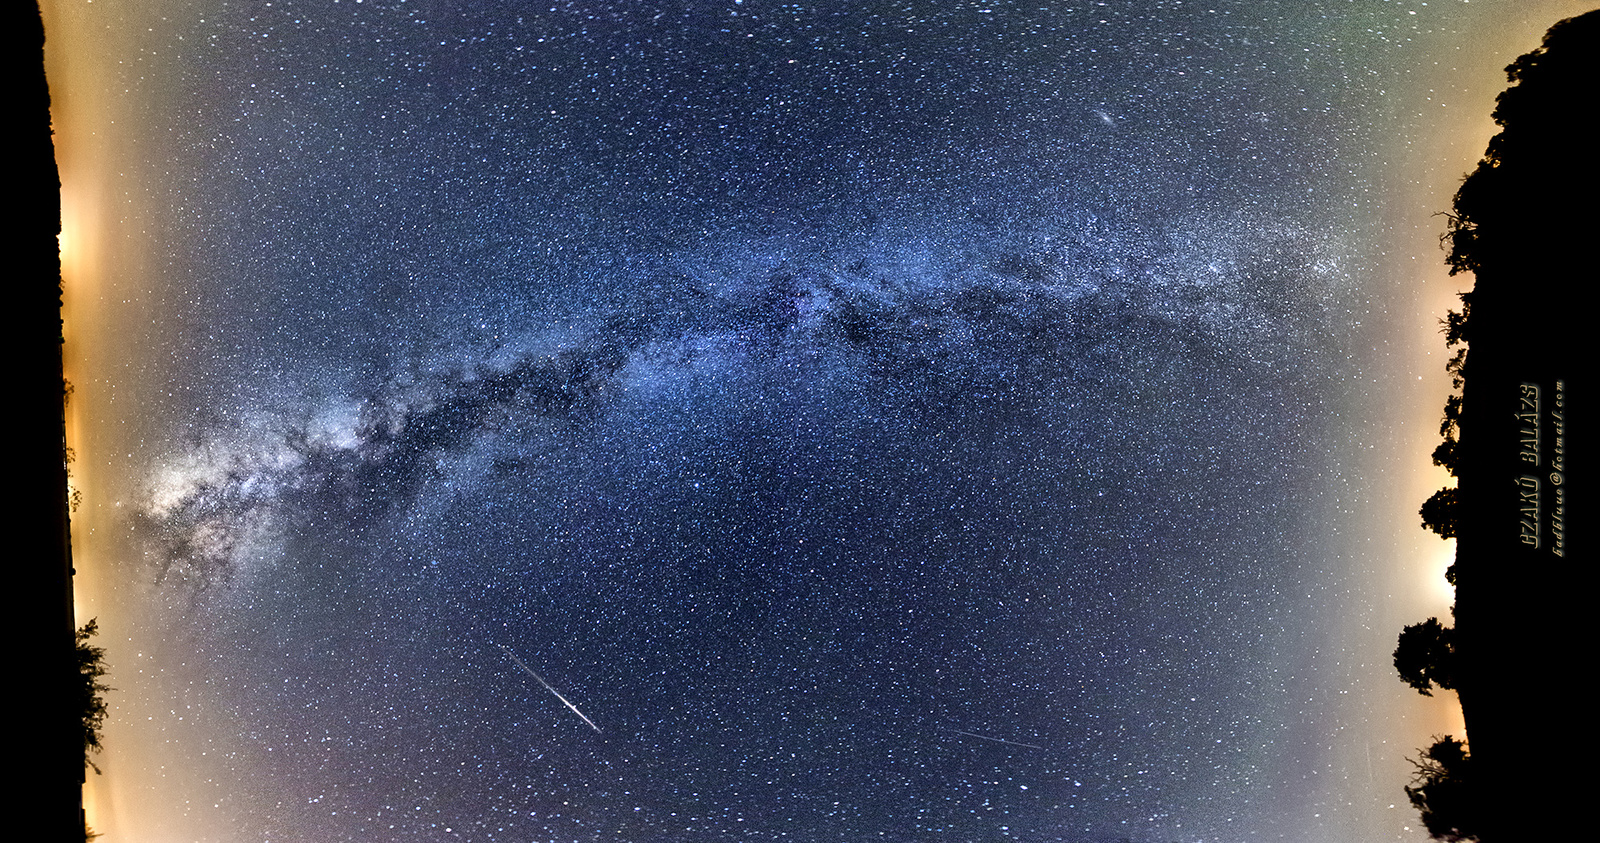 Czakó Balázs Fotográfia: Milky Way 6 Pic Pano CzB